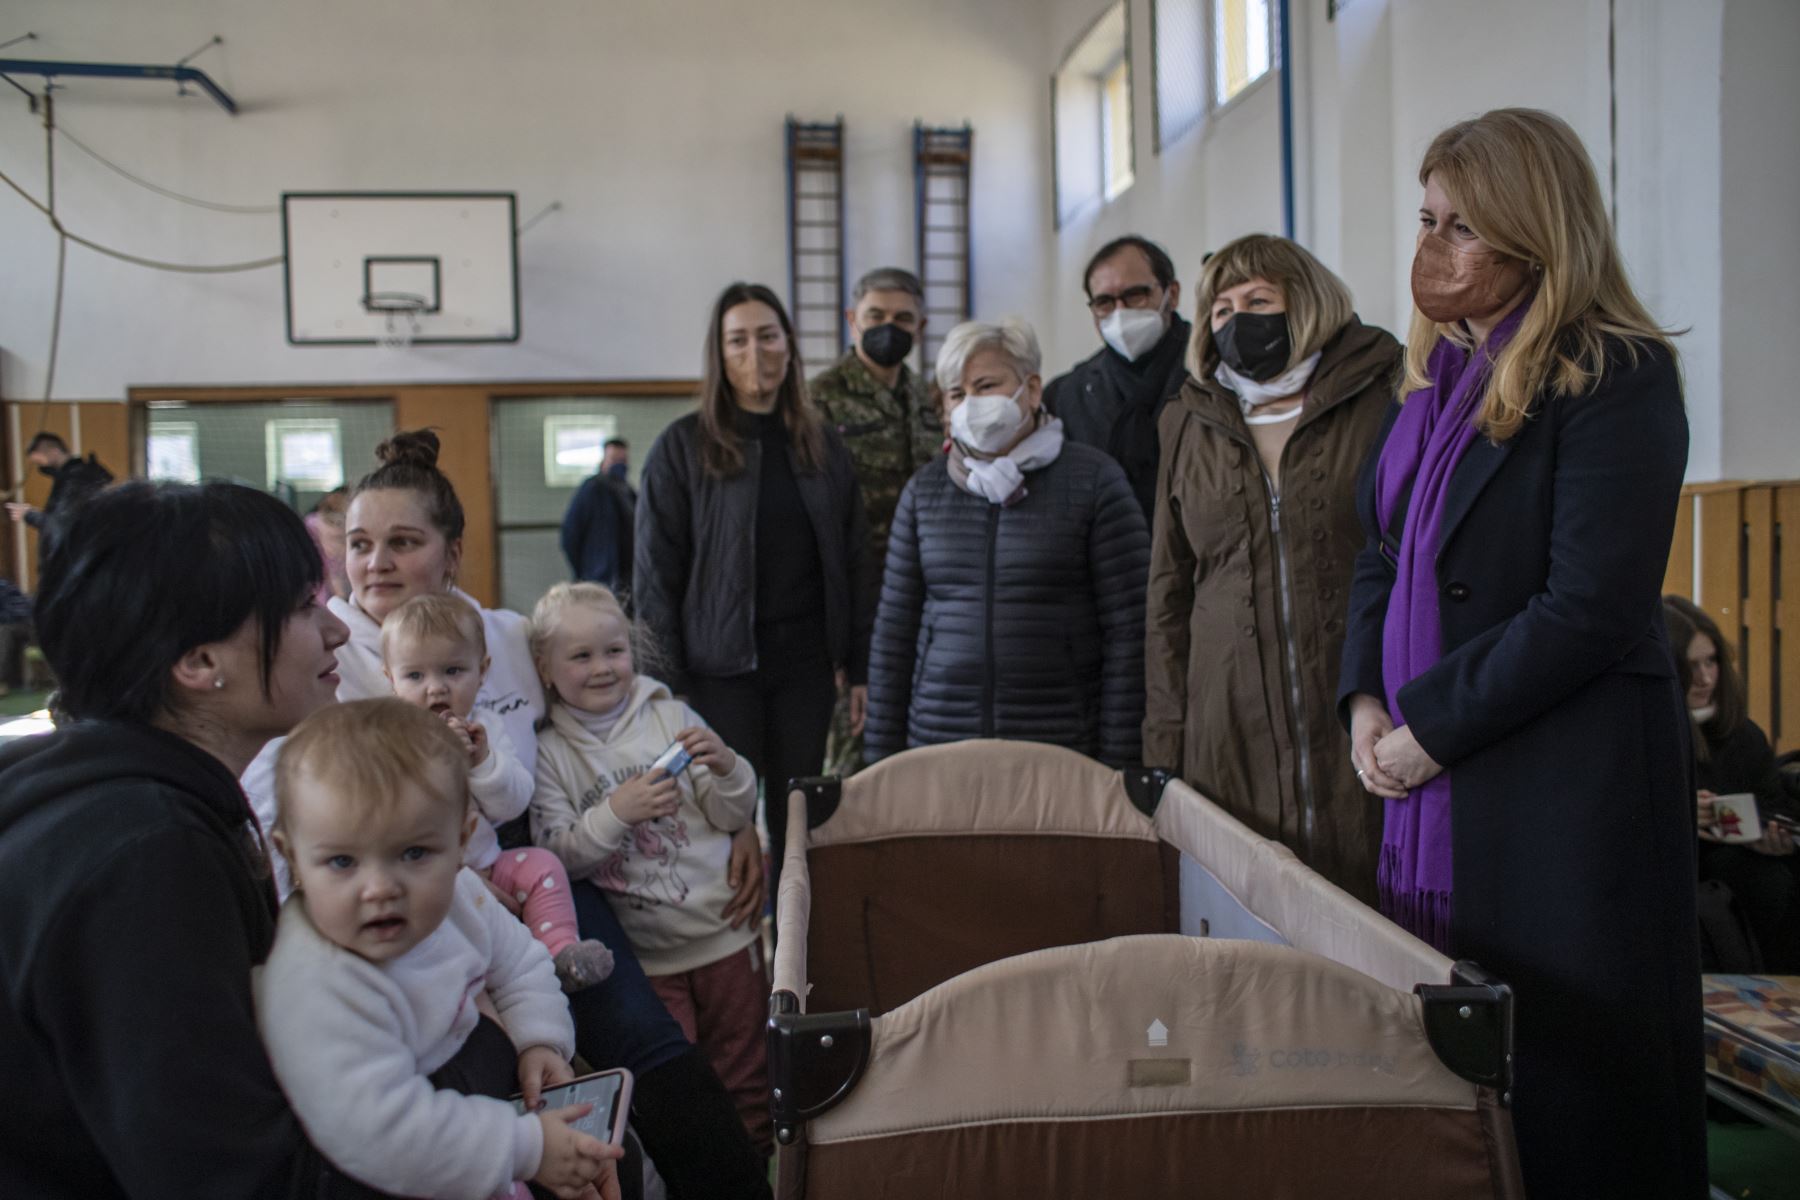 La presidenta eslovaca Zuzana Caputova (R) visita a las personas que huyen de Ucrania a Eslovaquia a través del cruce fronterizo de Ubla, en el salón deportivo de la escuela, en Ubla, Eslovaquia, el 27 de febrero de 2022. Foto: EFE